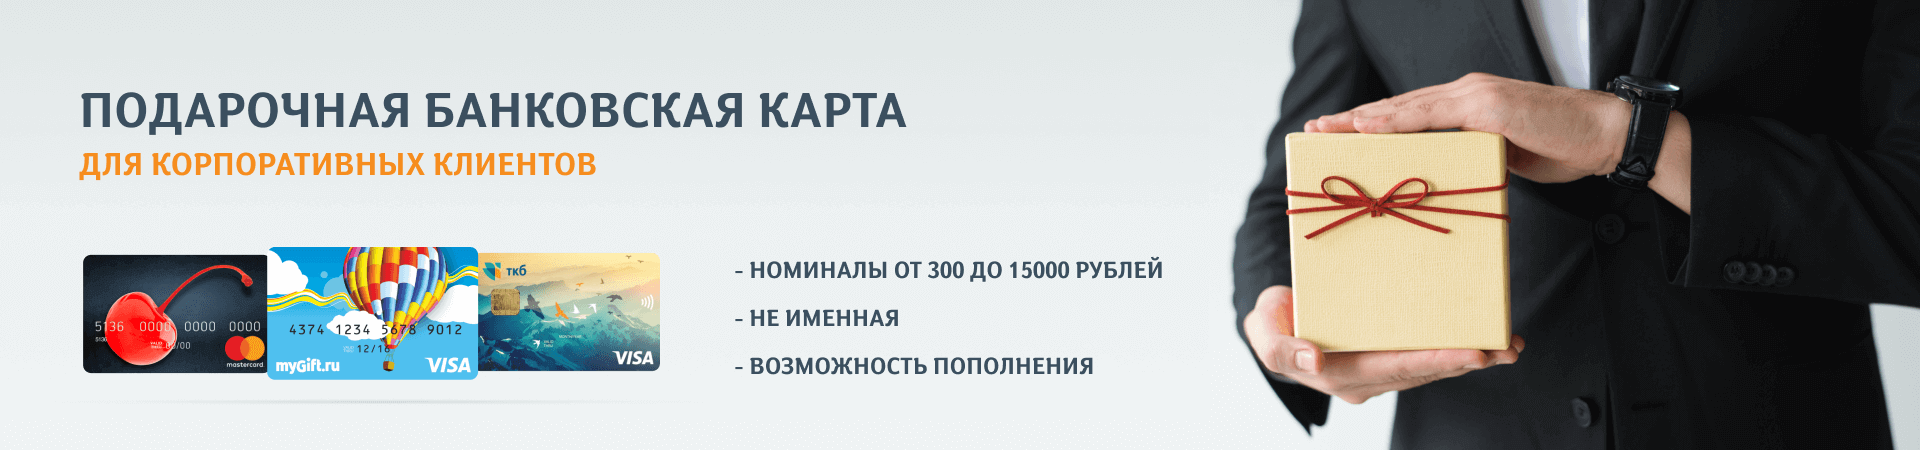 Https vpodarok ru activate. Электронные сертификаты в подарок. Универсальная подарочная карта. Подарочный сертификат Озон. Подарочный сертификат Озон картинка.